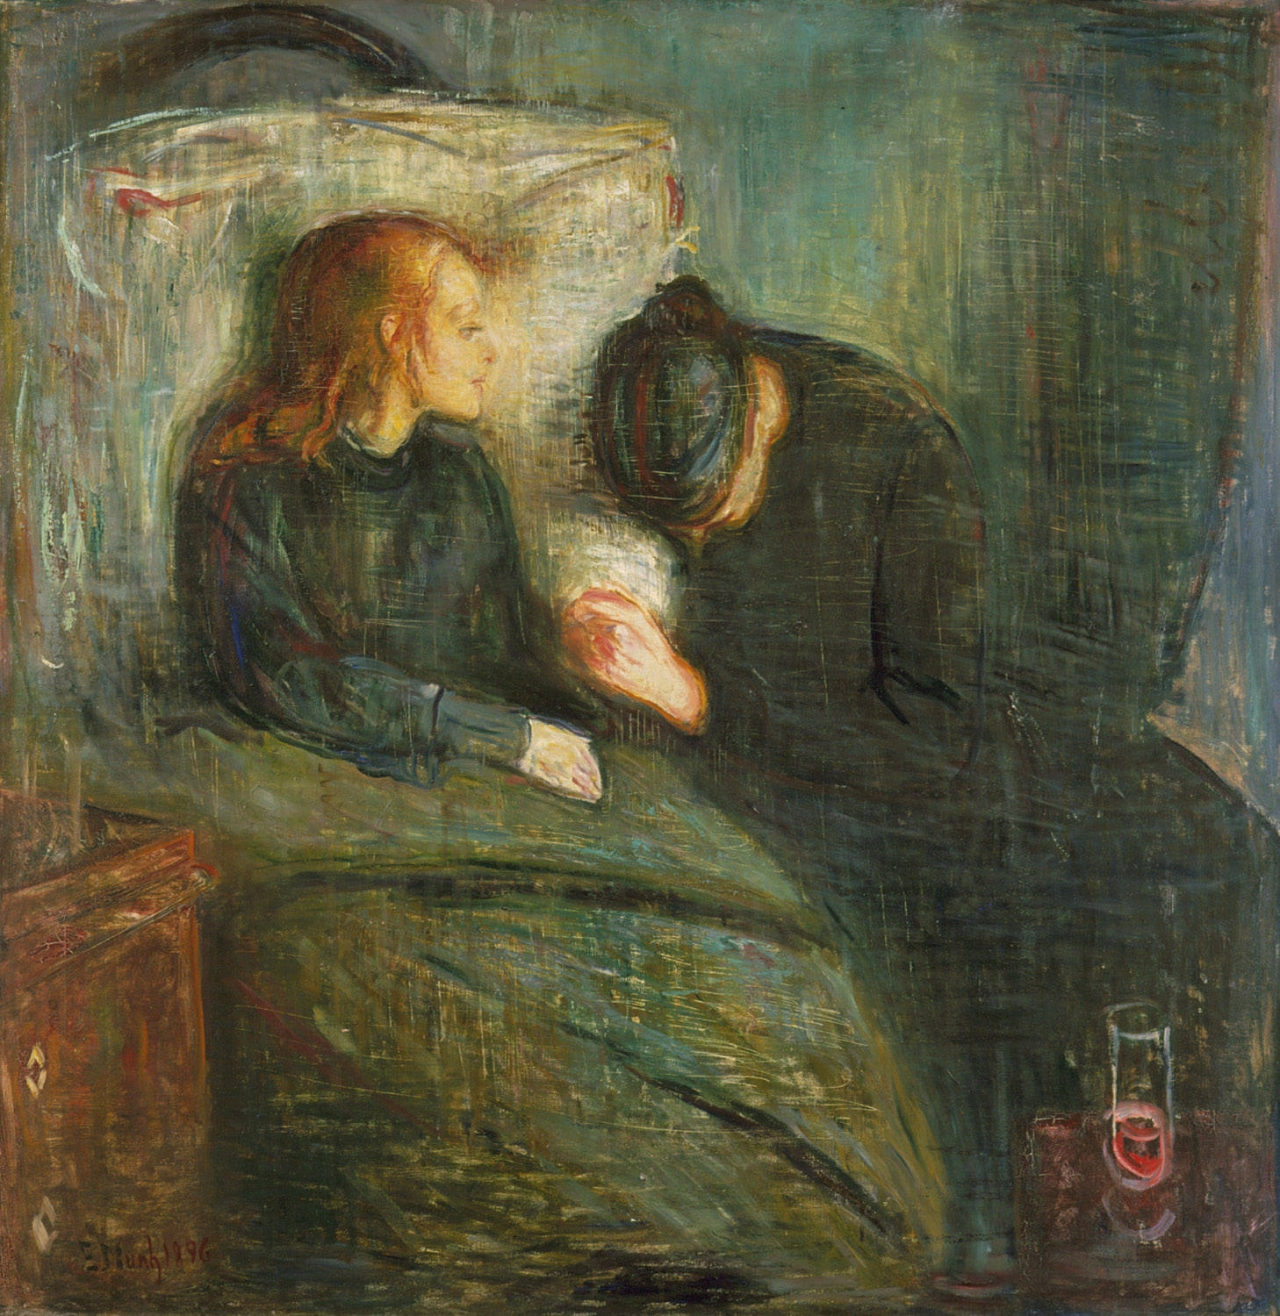 어린 시절 정신질환을 앓았던 뭉크에서 누이의 죽음은 큰 충격을 다가왔다. '아픈 아이'라는 제목의 이 그림은 병석의 누이를 그린 작품으로 모두 6개의 모작이 있을 정도로 뭉크가 집착했던 그림이다. 뭉크 Edvard Munch,1863~1944. 아픈 아이, 1896, 캔버스에 오일, 118 × 121cm, Gothenburg Museum of Art 소장.